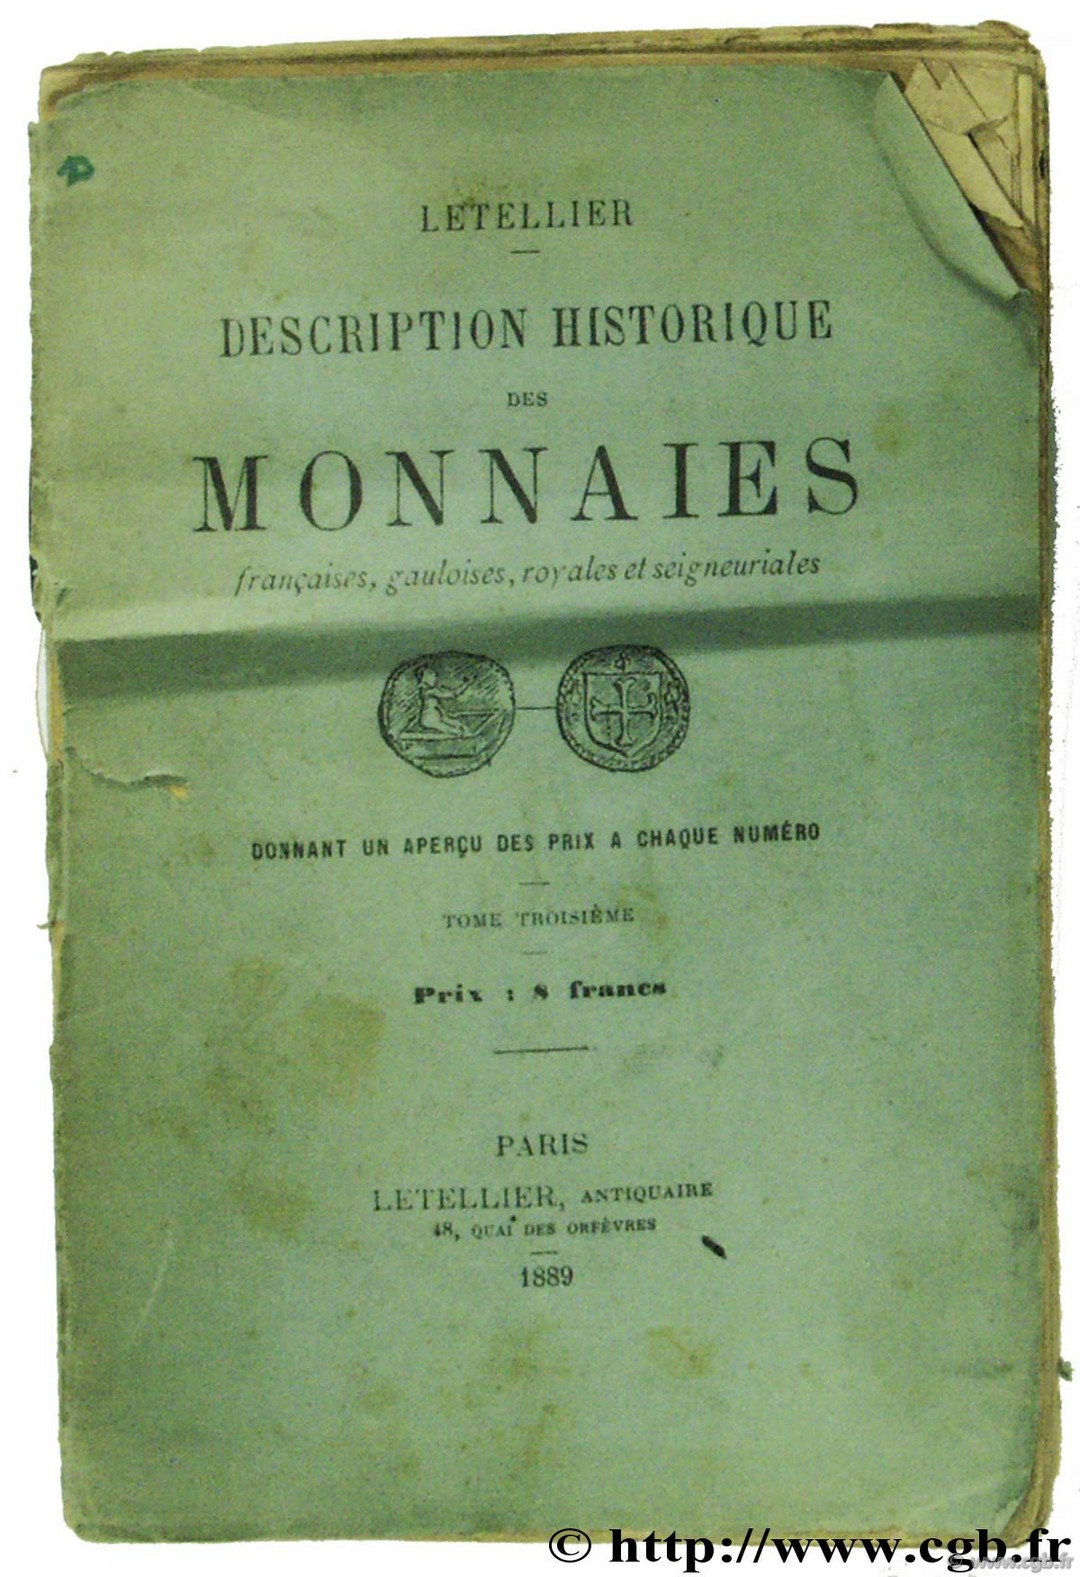 Description historique des monnaies françaises, gauloises, royales et féodales LETELLIER E.